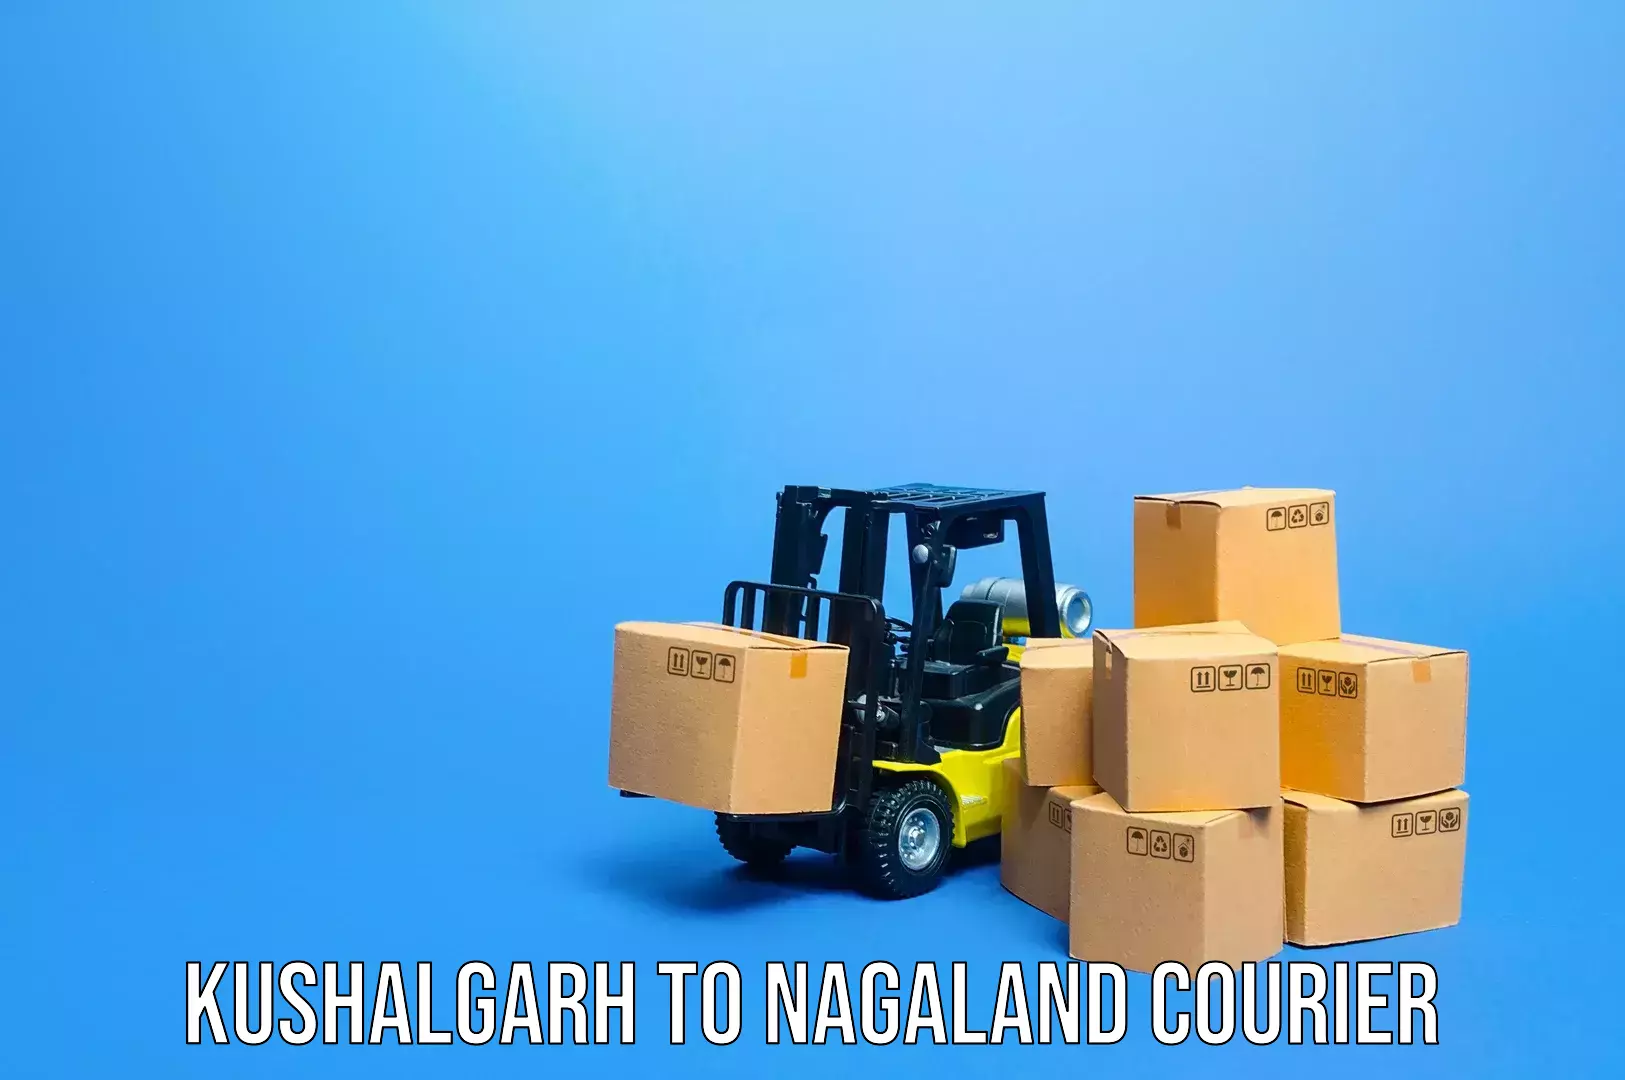 Baggage transport innovation Kushalgarh to NIT Nagaland